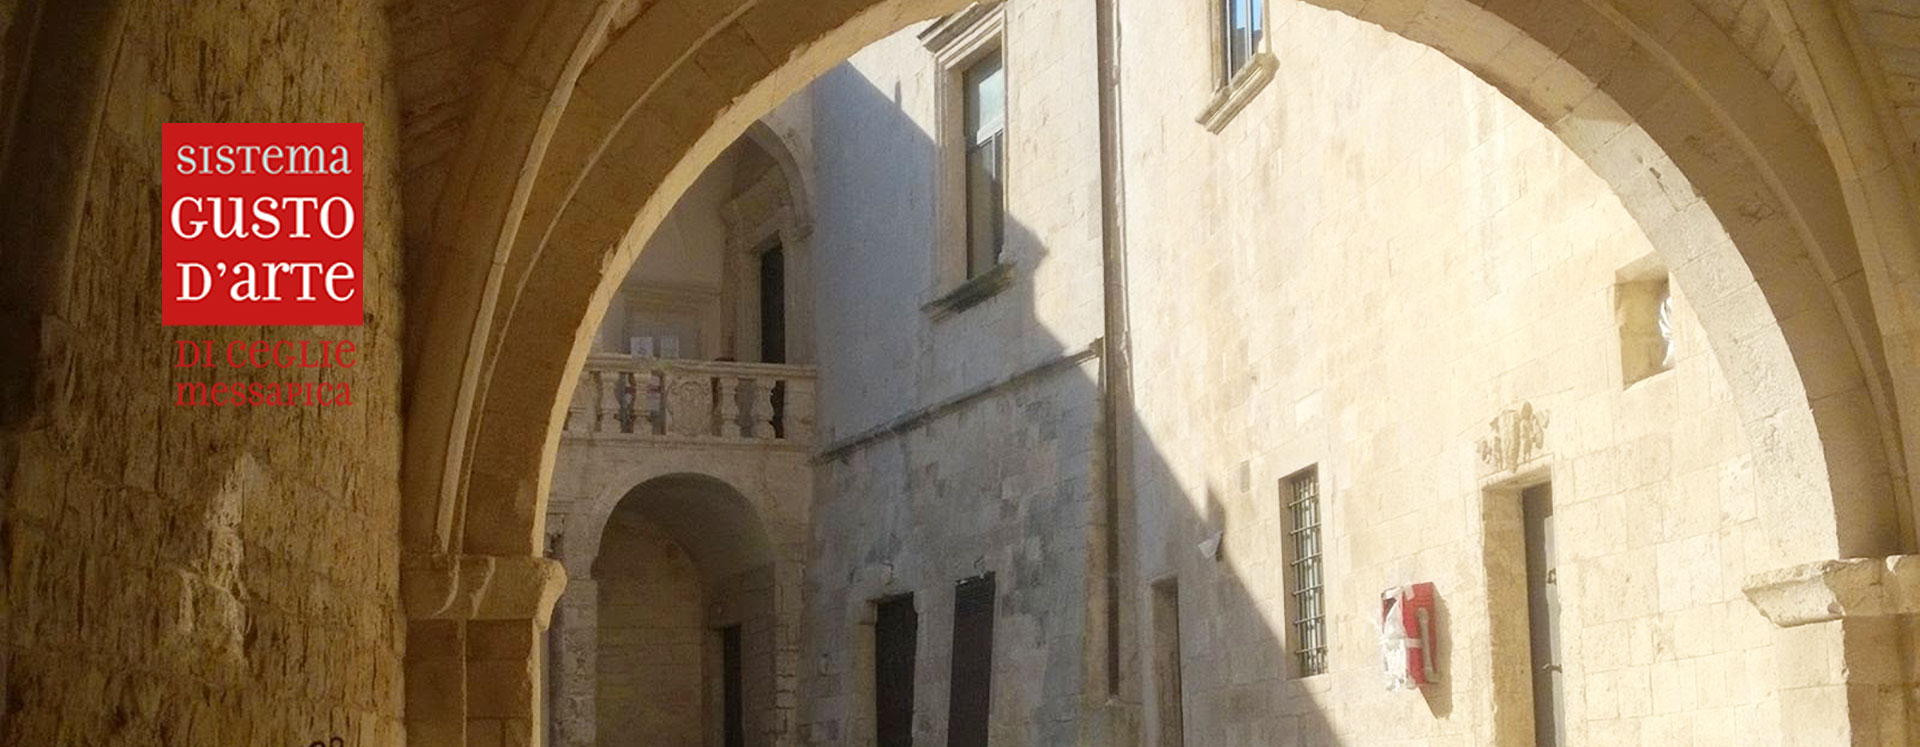 Sistema Gusto d'Arte - Ceglie Messapica - Castello